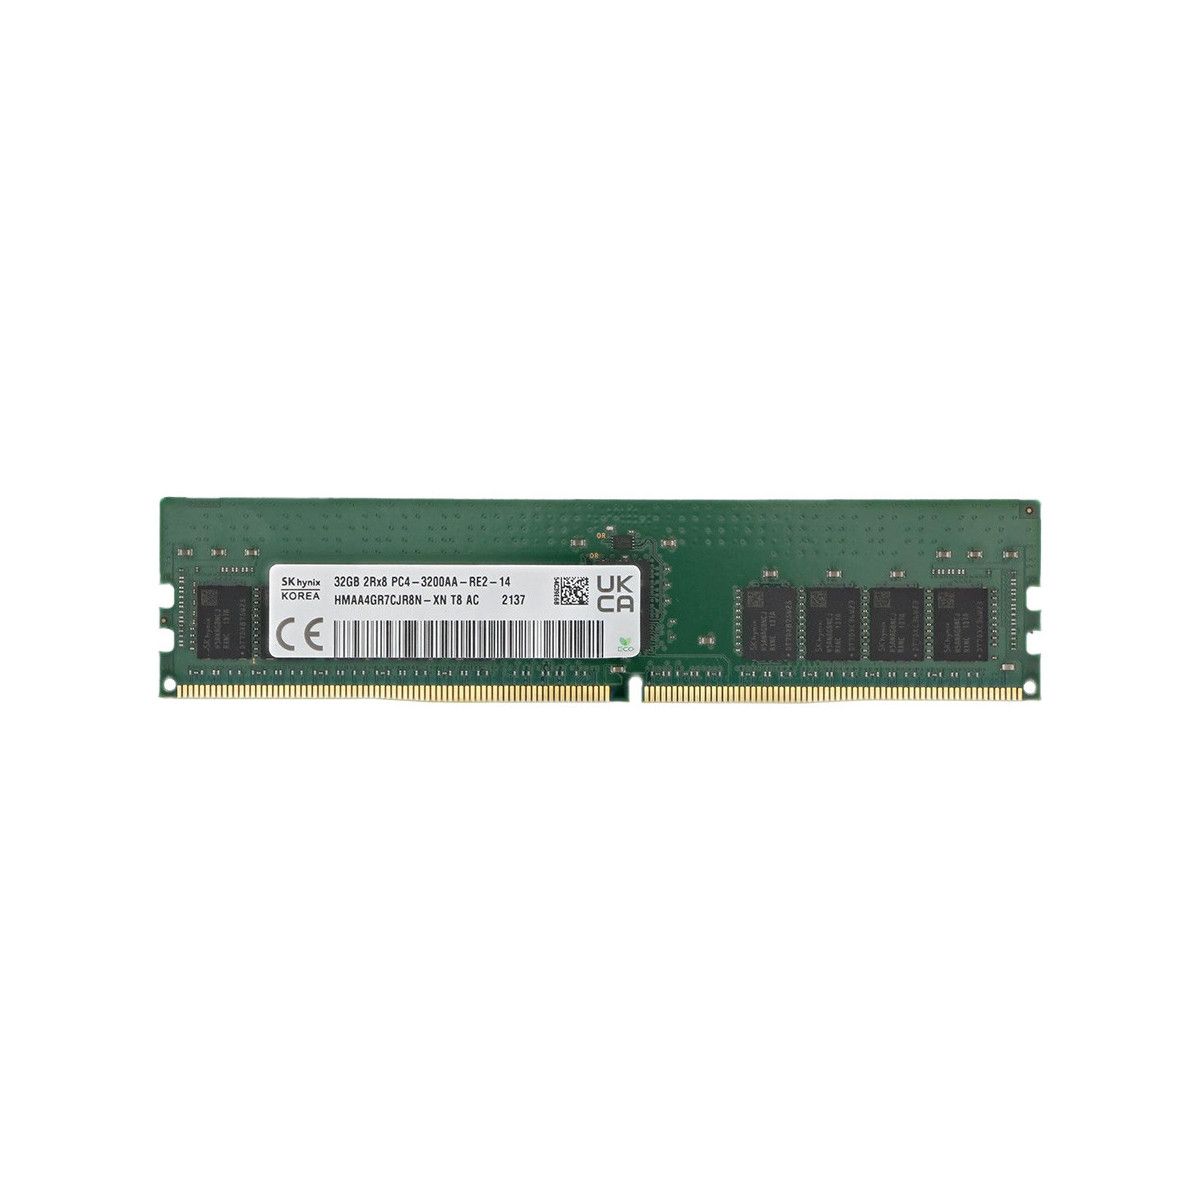 MEM-DR432L-HL04-ER32-MS- Memstar 1x 32GB DDR4-3200 RDIMM